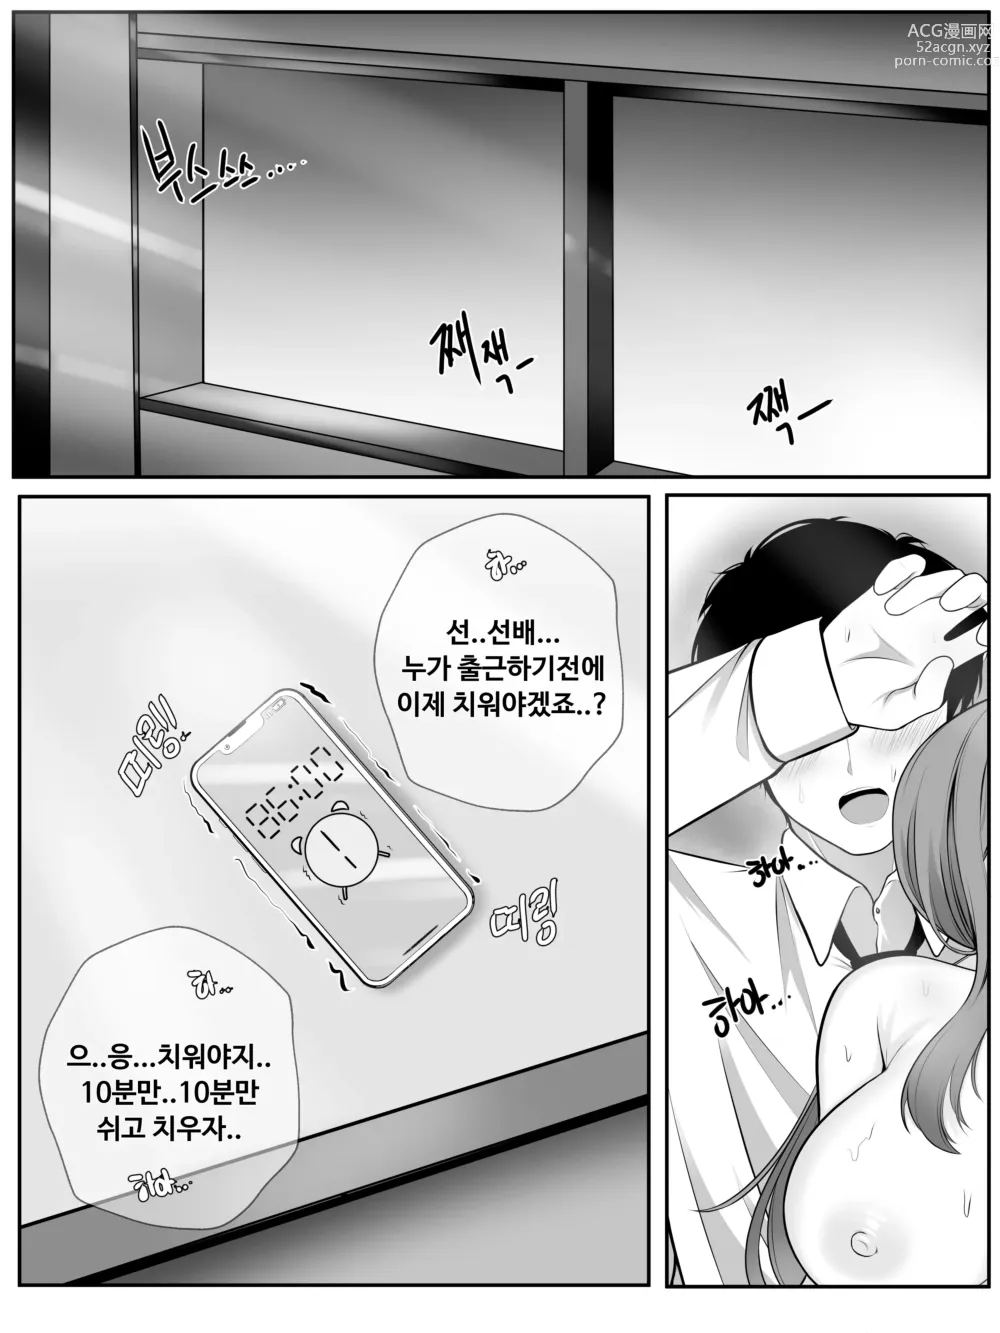 Page 58 of doujinshi 나쟈 만화